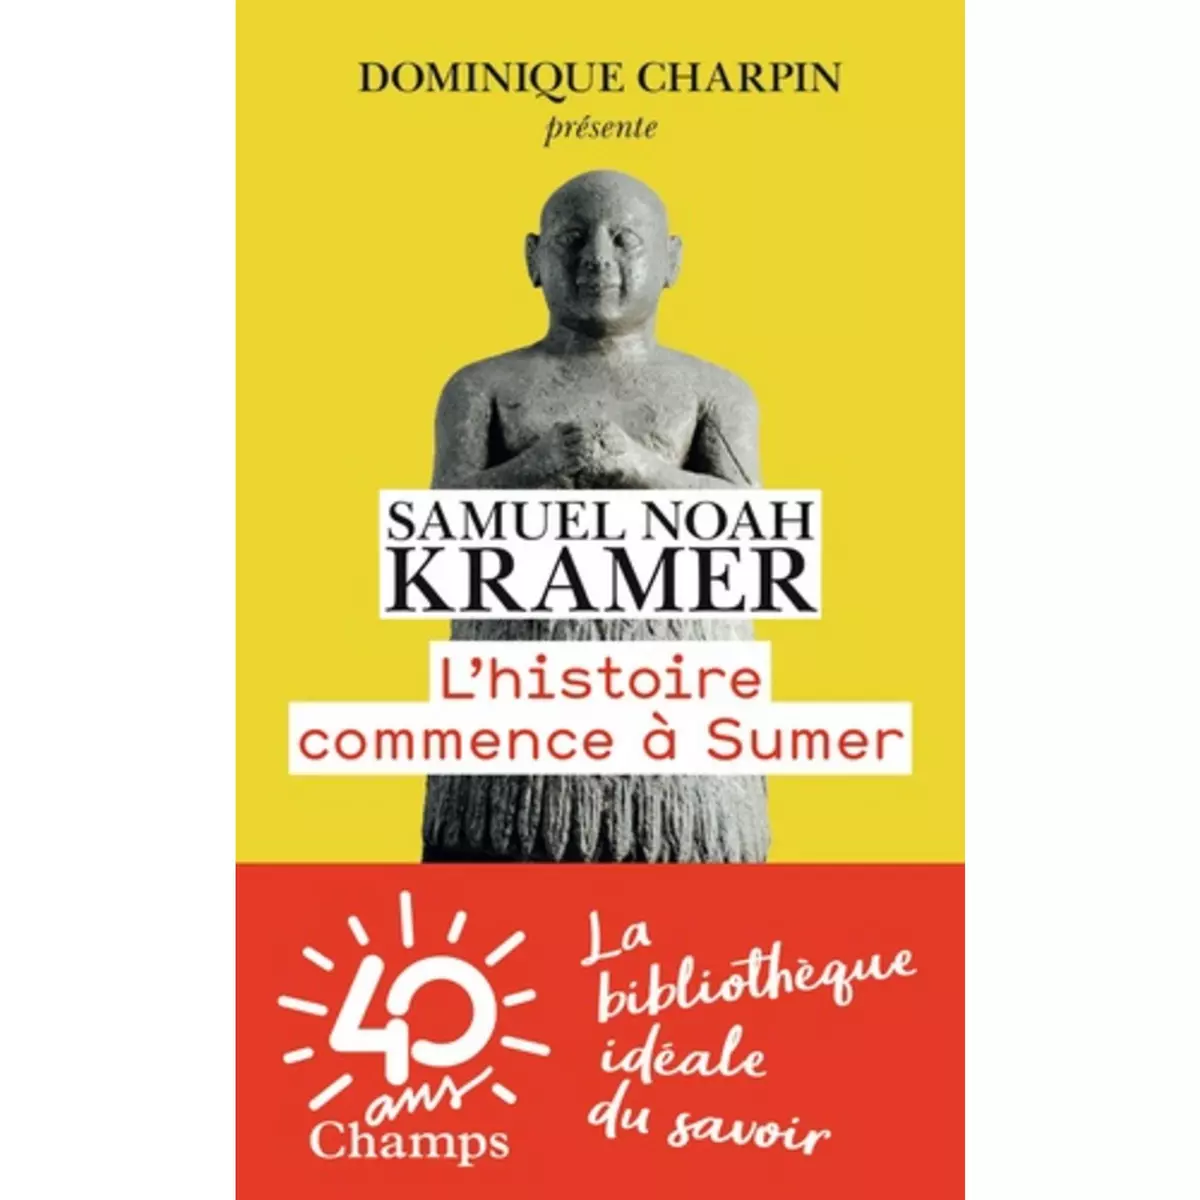  L'HISTOIRE COMMENCE A SUMER, Kramer Samuel Noah